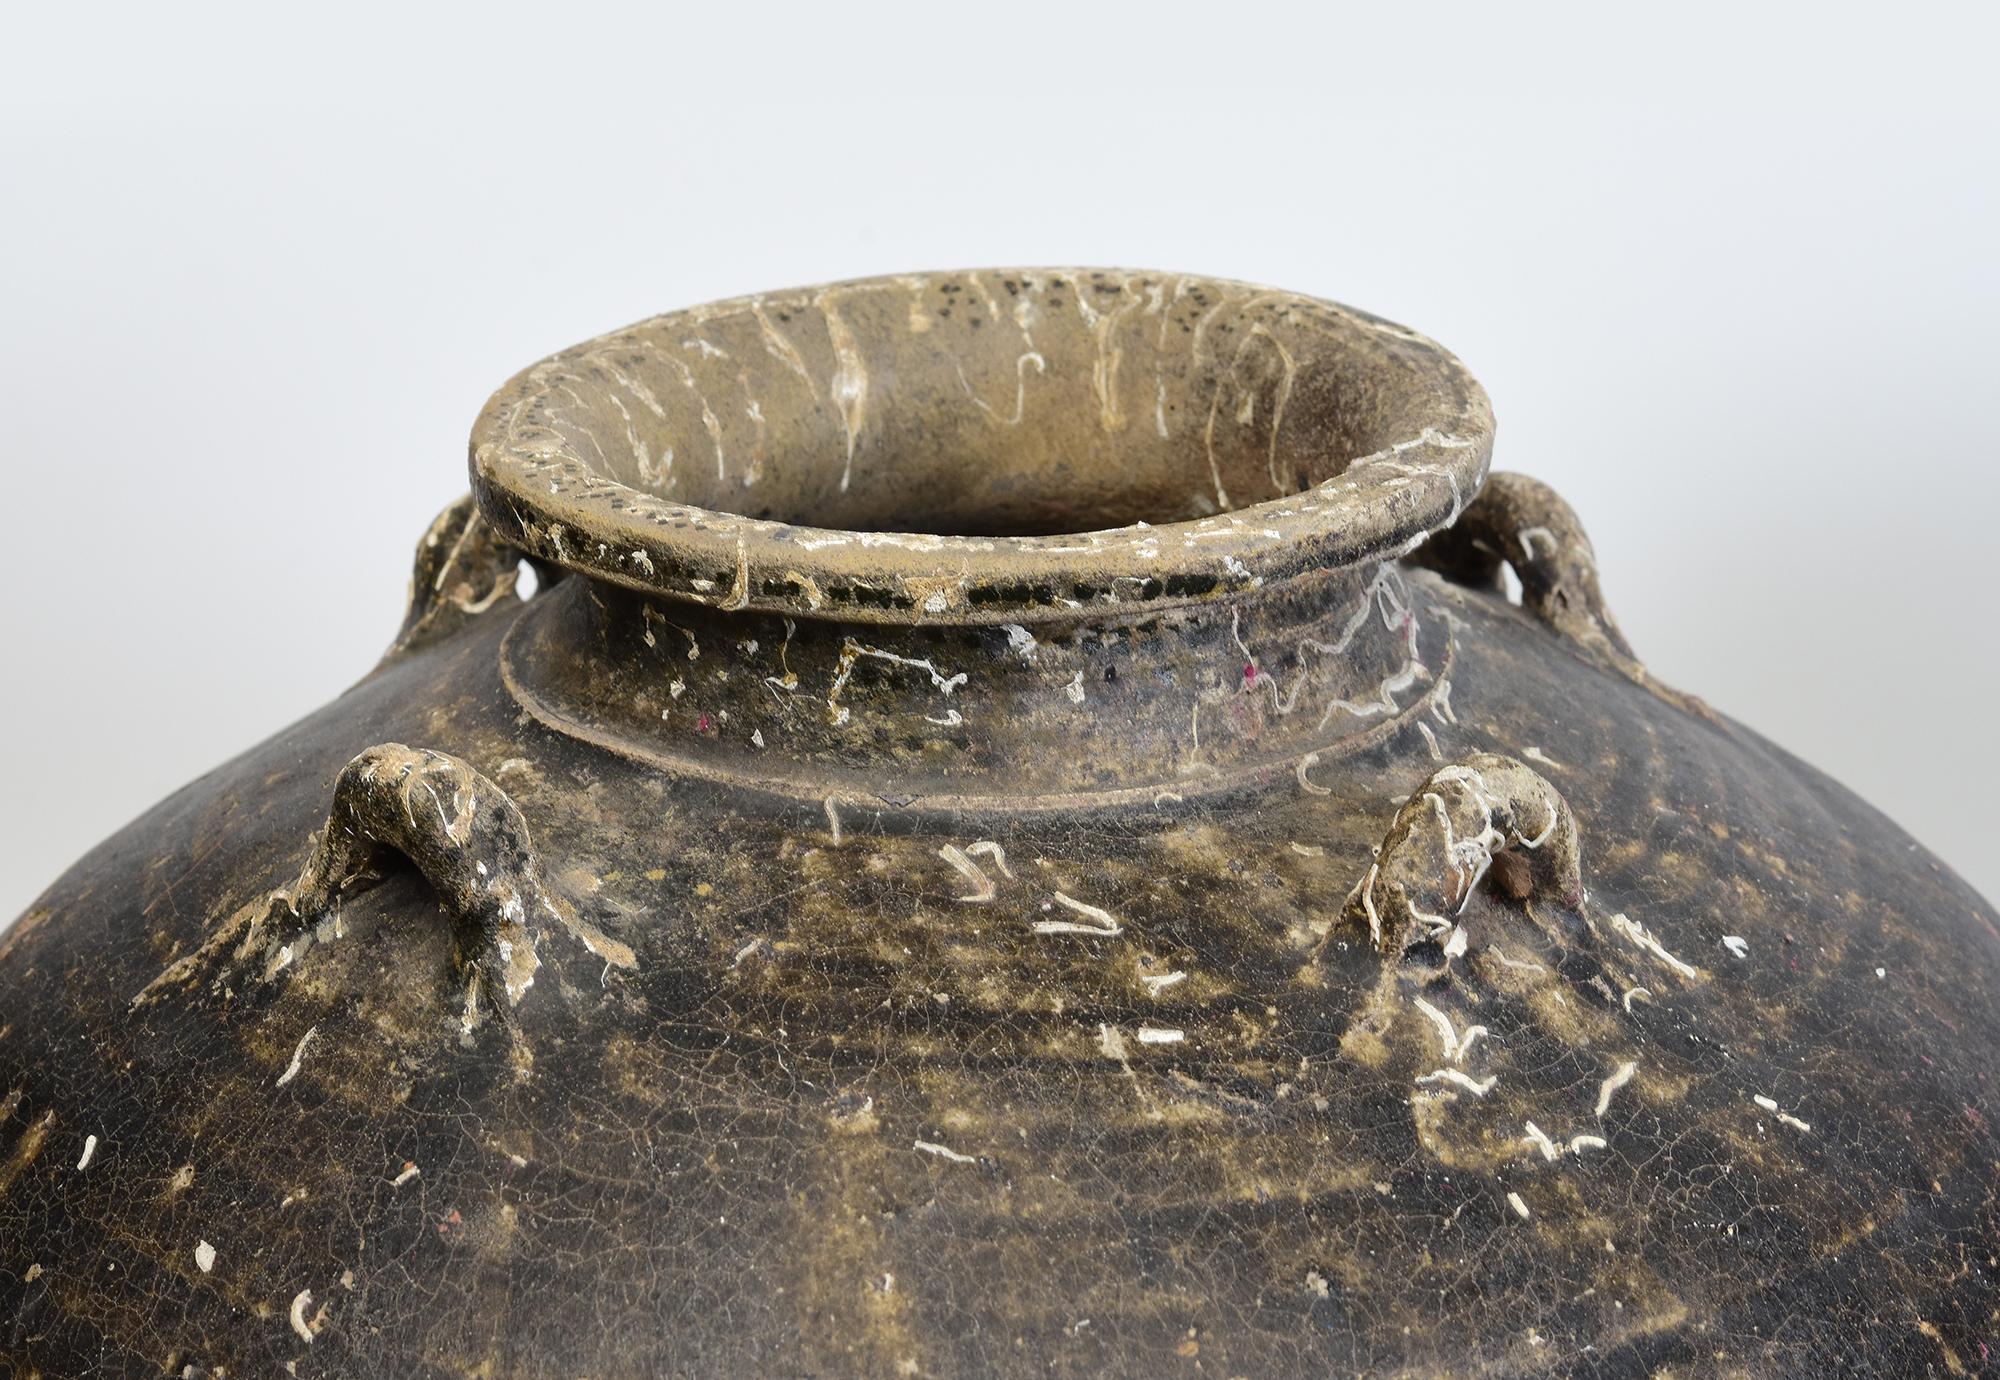 Paire de jarres anciennes en poterie de Sukhothai à glaçure brune, avec glaçure naturelle sur le corps, coquillage naturel et bernacle provenant d'une épave.

Âge : Thaïlande, période Sukhothai, 14e - 16e siècle
Taille : Hauteur 37 - 38 C.M. /